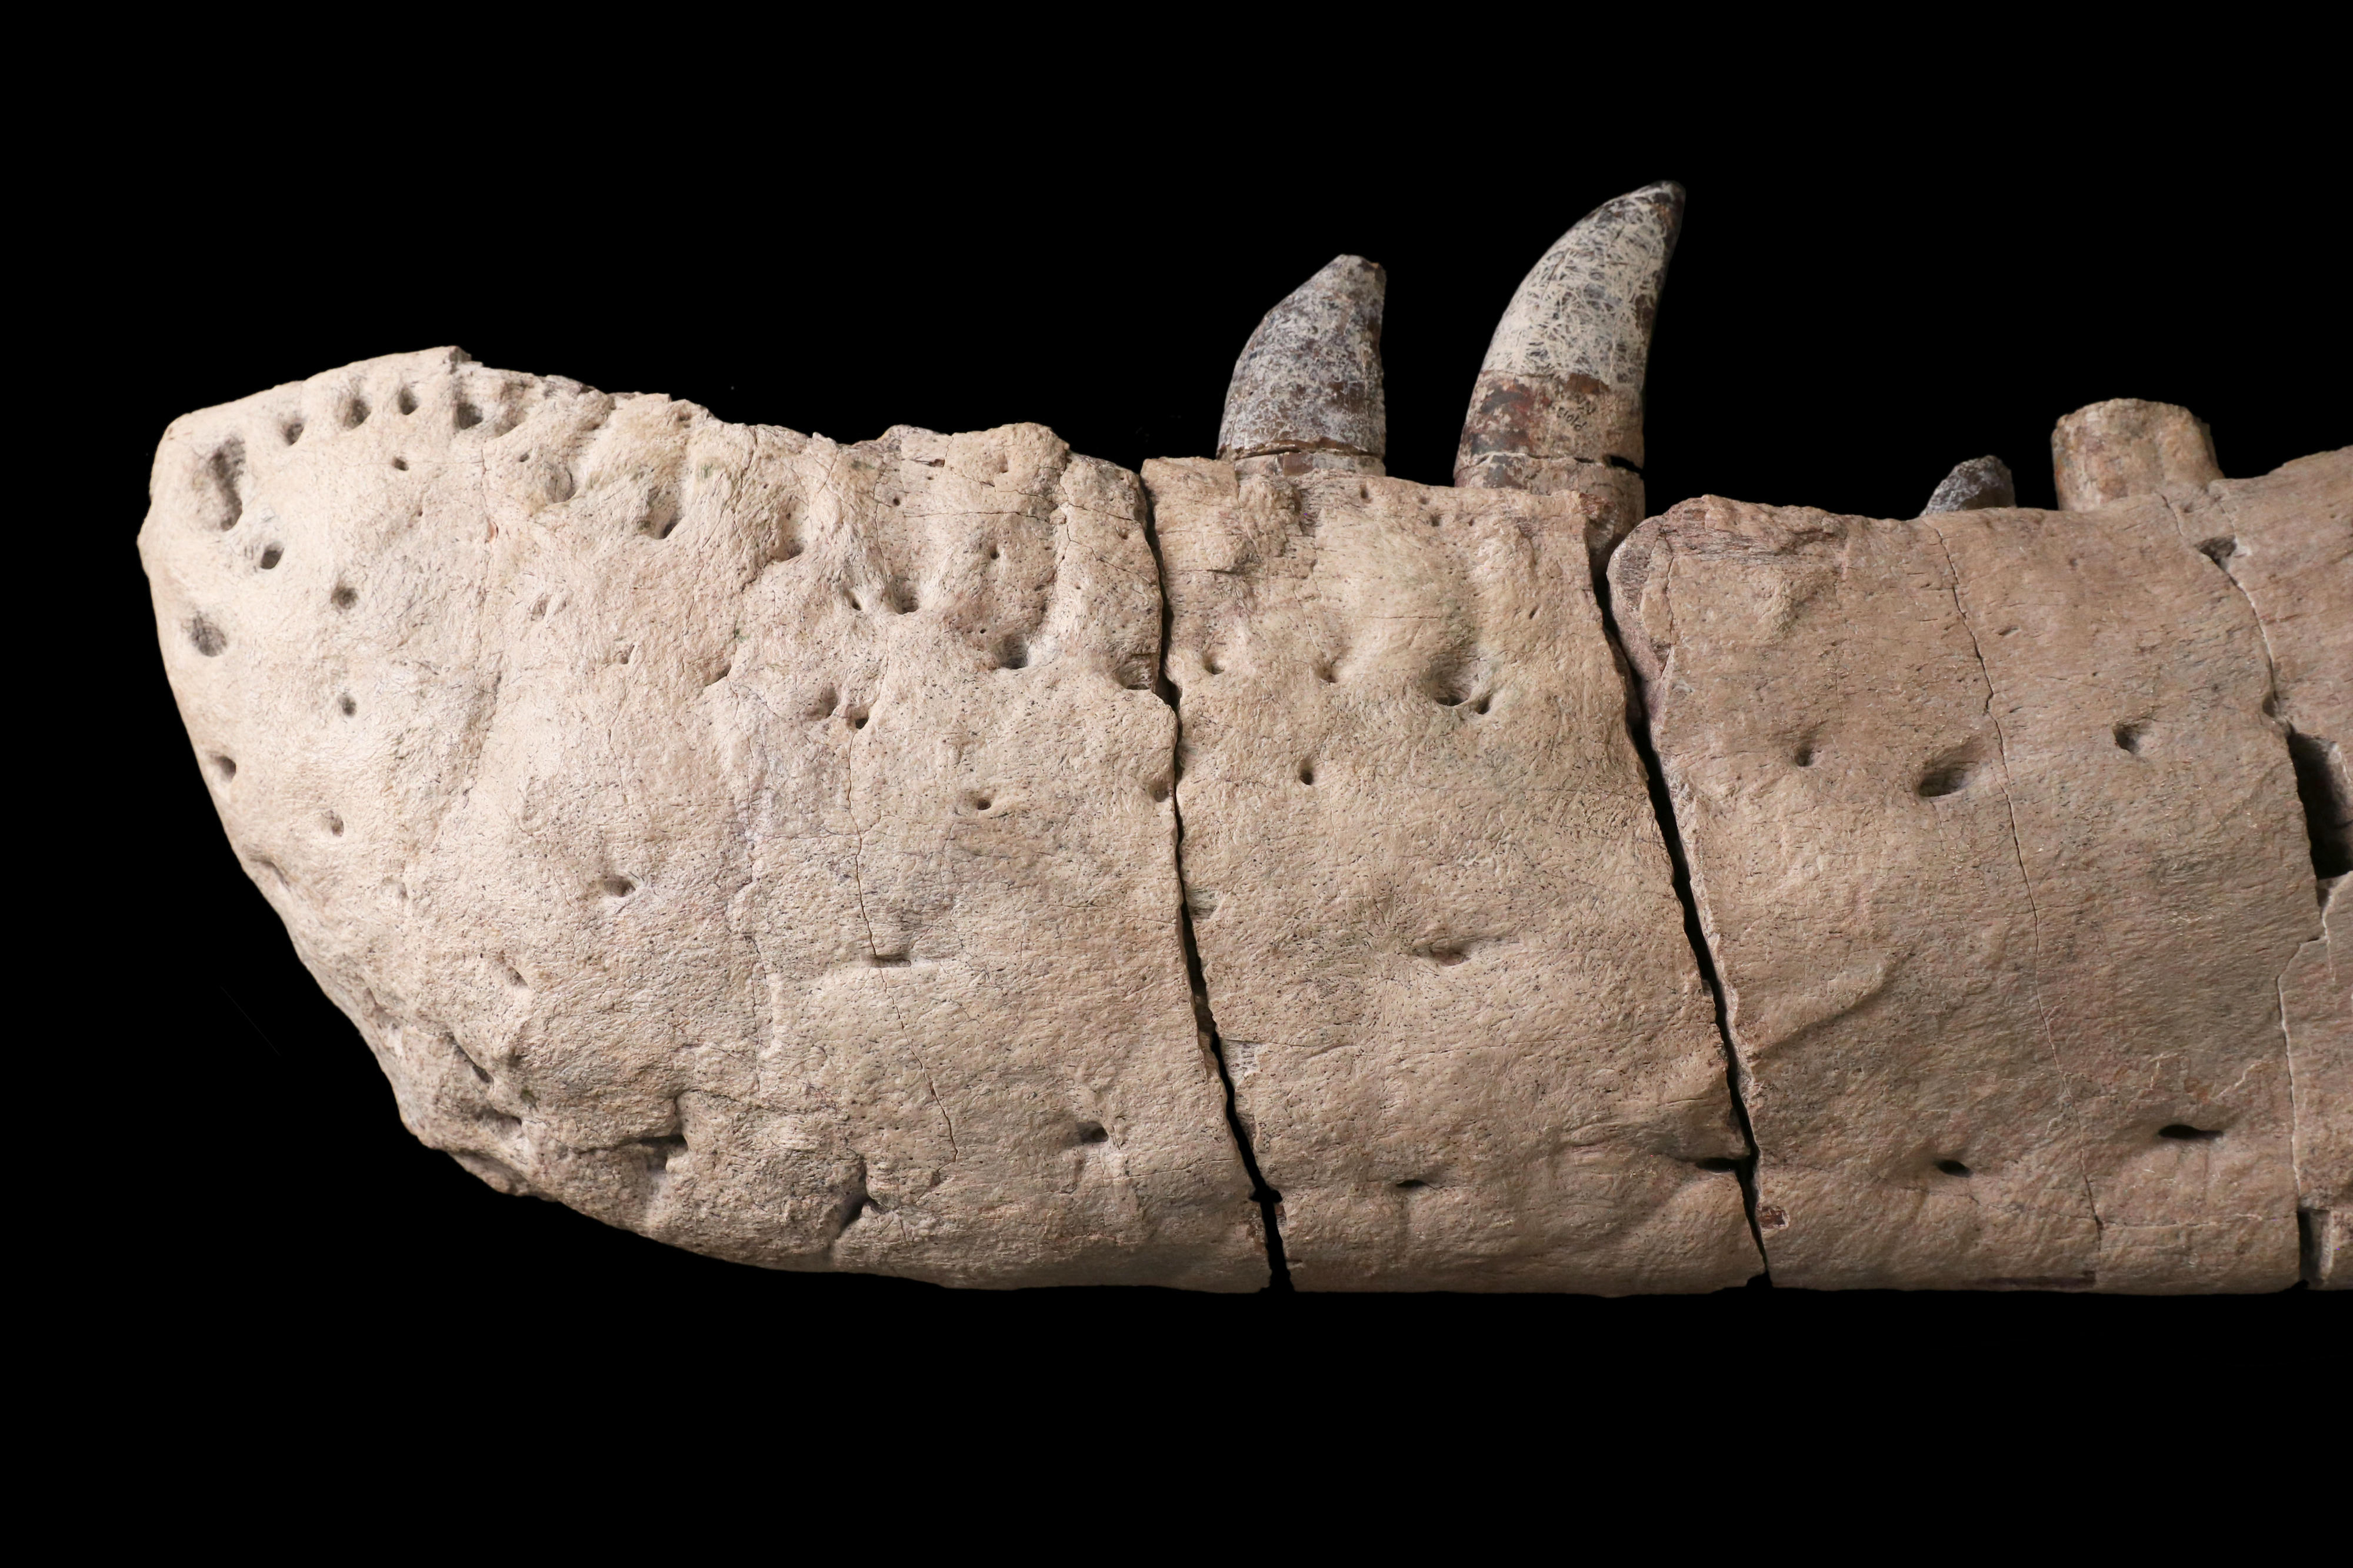 미국 뉴멕시코 자연사·과학 박물관에 있는 티라노사우루스 맥라엔시스의 턱뼈 화석. 턱 뒤쪽의 큰 흉터는 다른 티라노사우루스와 싸워서 생긴 것으로 보고 있다.  영국 배스대 제공